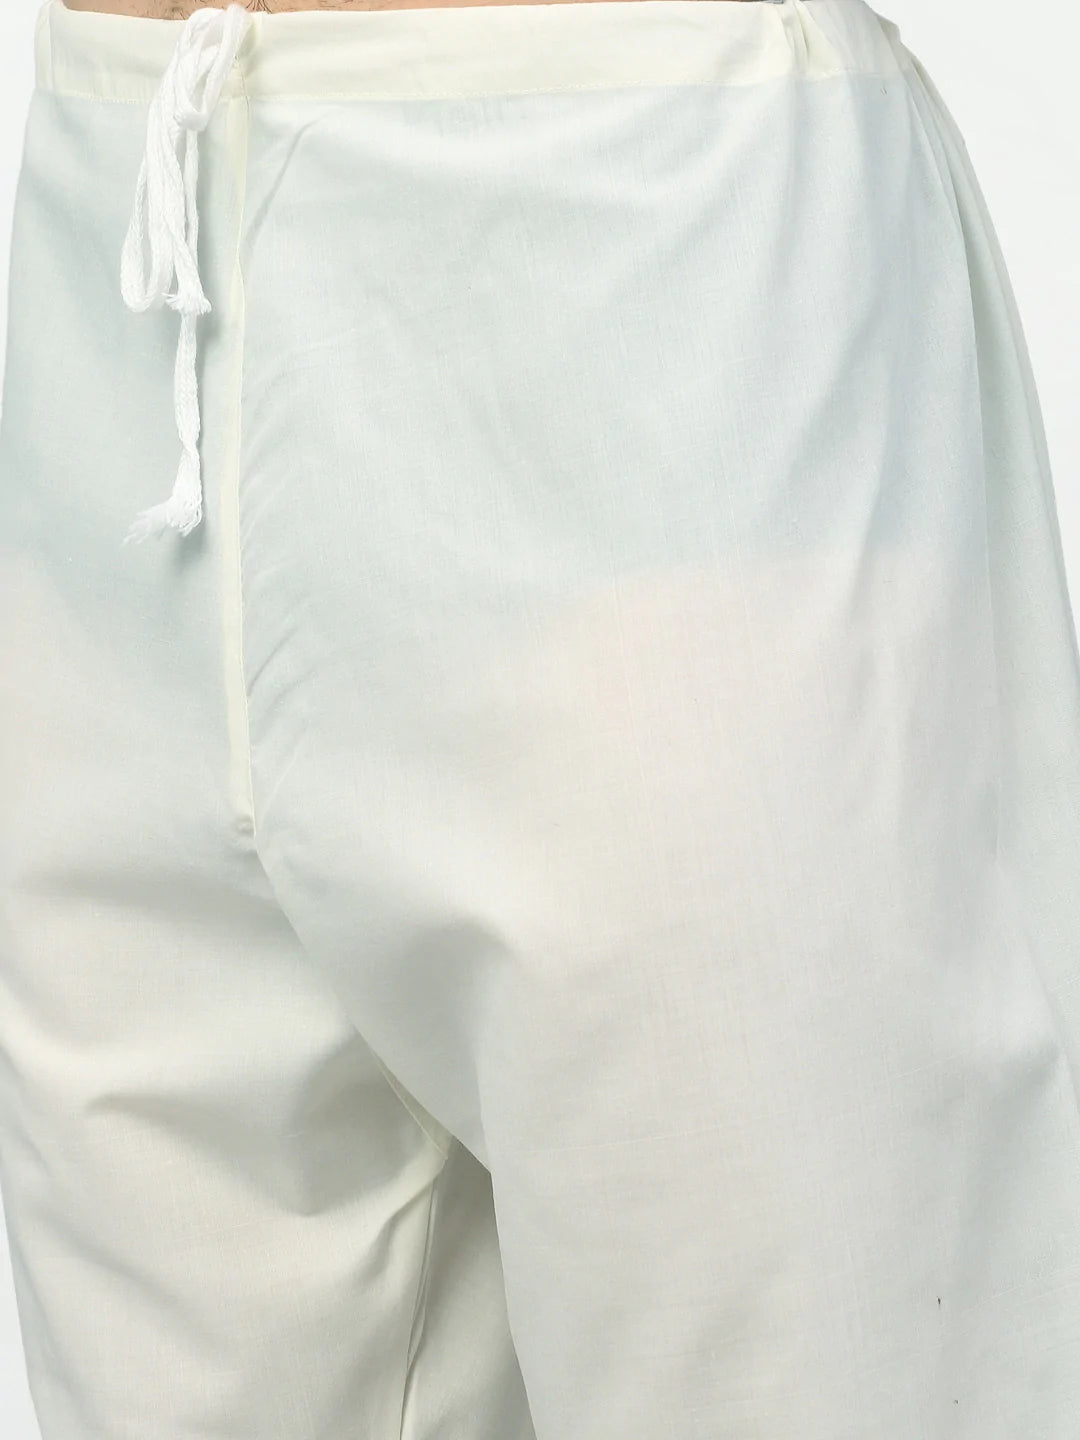 Jompers Men's Sky Printed Cotton Kurta Payjama Sets ( JOKP 614 Sky )